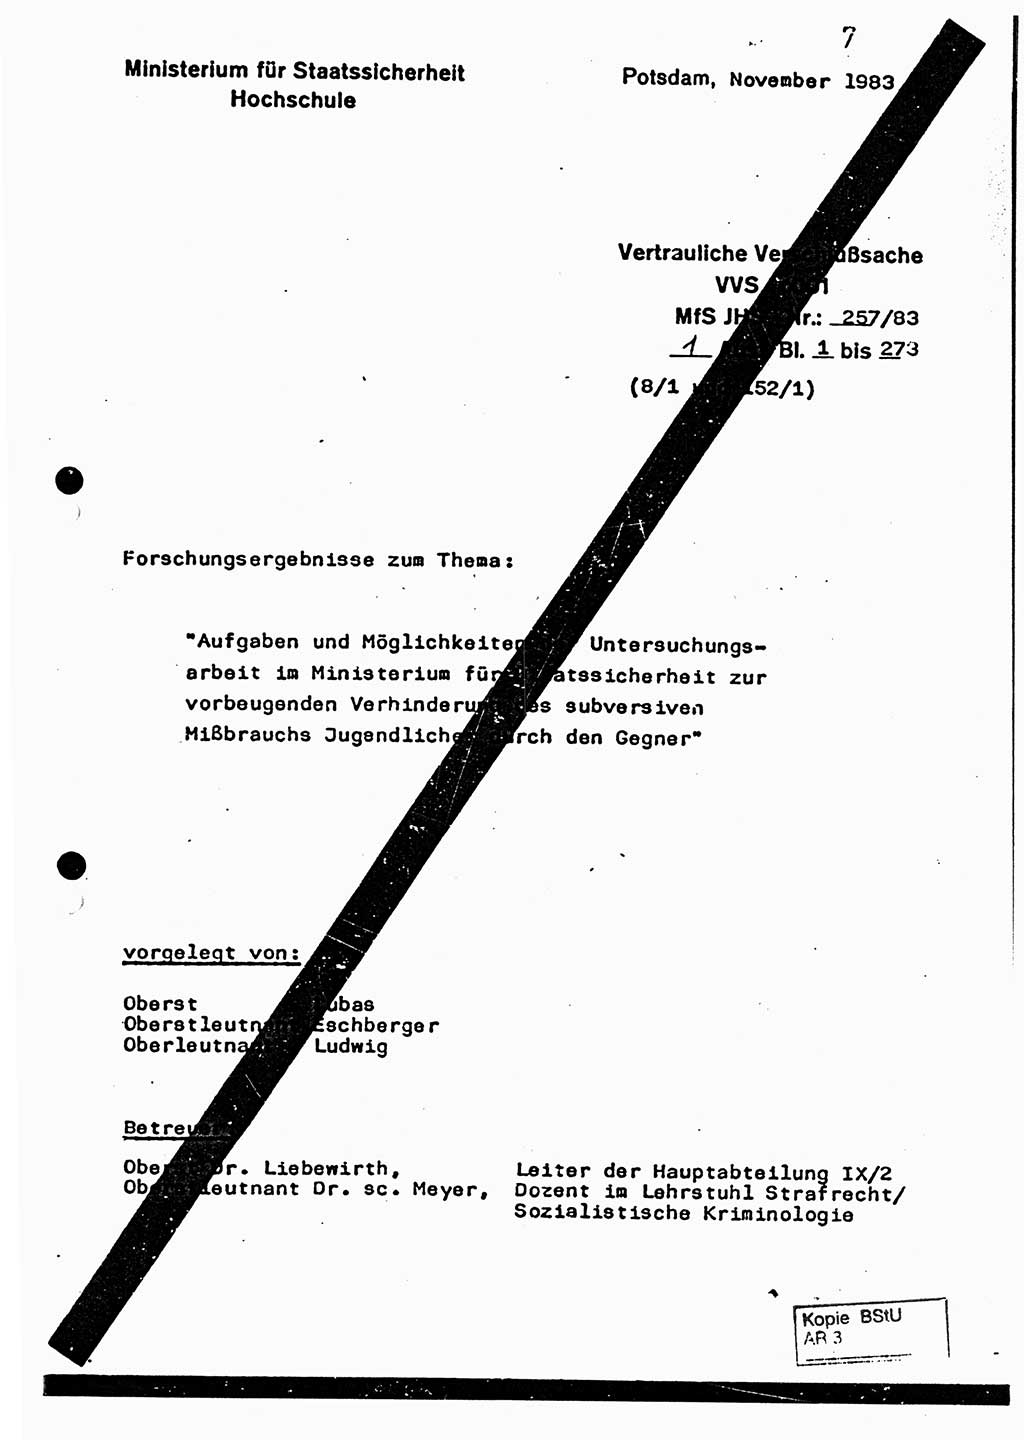 Dissertation, Oberst Helmut Lubas (BV Mdg.), Oberstleutnant Manfred Eschberger (HA IX), Oberleutnant Hans-Jürgen Ludwig (JHS), Ministerium für Staatssicherheit (MfS) [Deutsche Demokratische Republik (DDR)], Juristische Hochschule (JHS), Vertrauliche Verschlußsache (VVS) o001-257/83, Potsdam 1983, Seite 1 (Diss. MfS DDR JHS VVS o001-257/83 1983, S. 1)